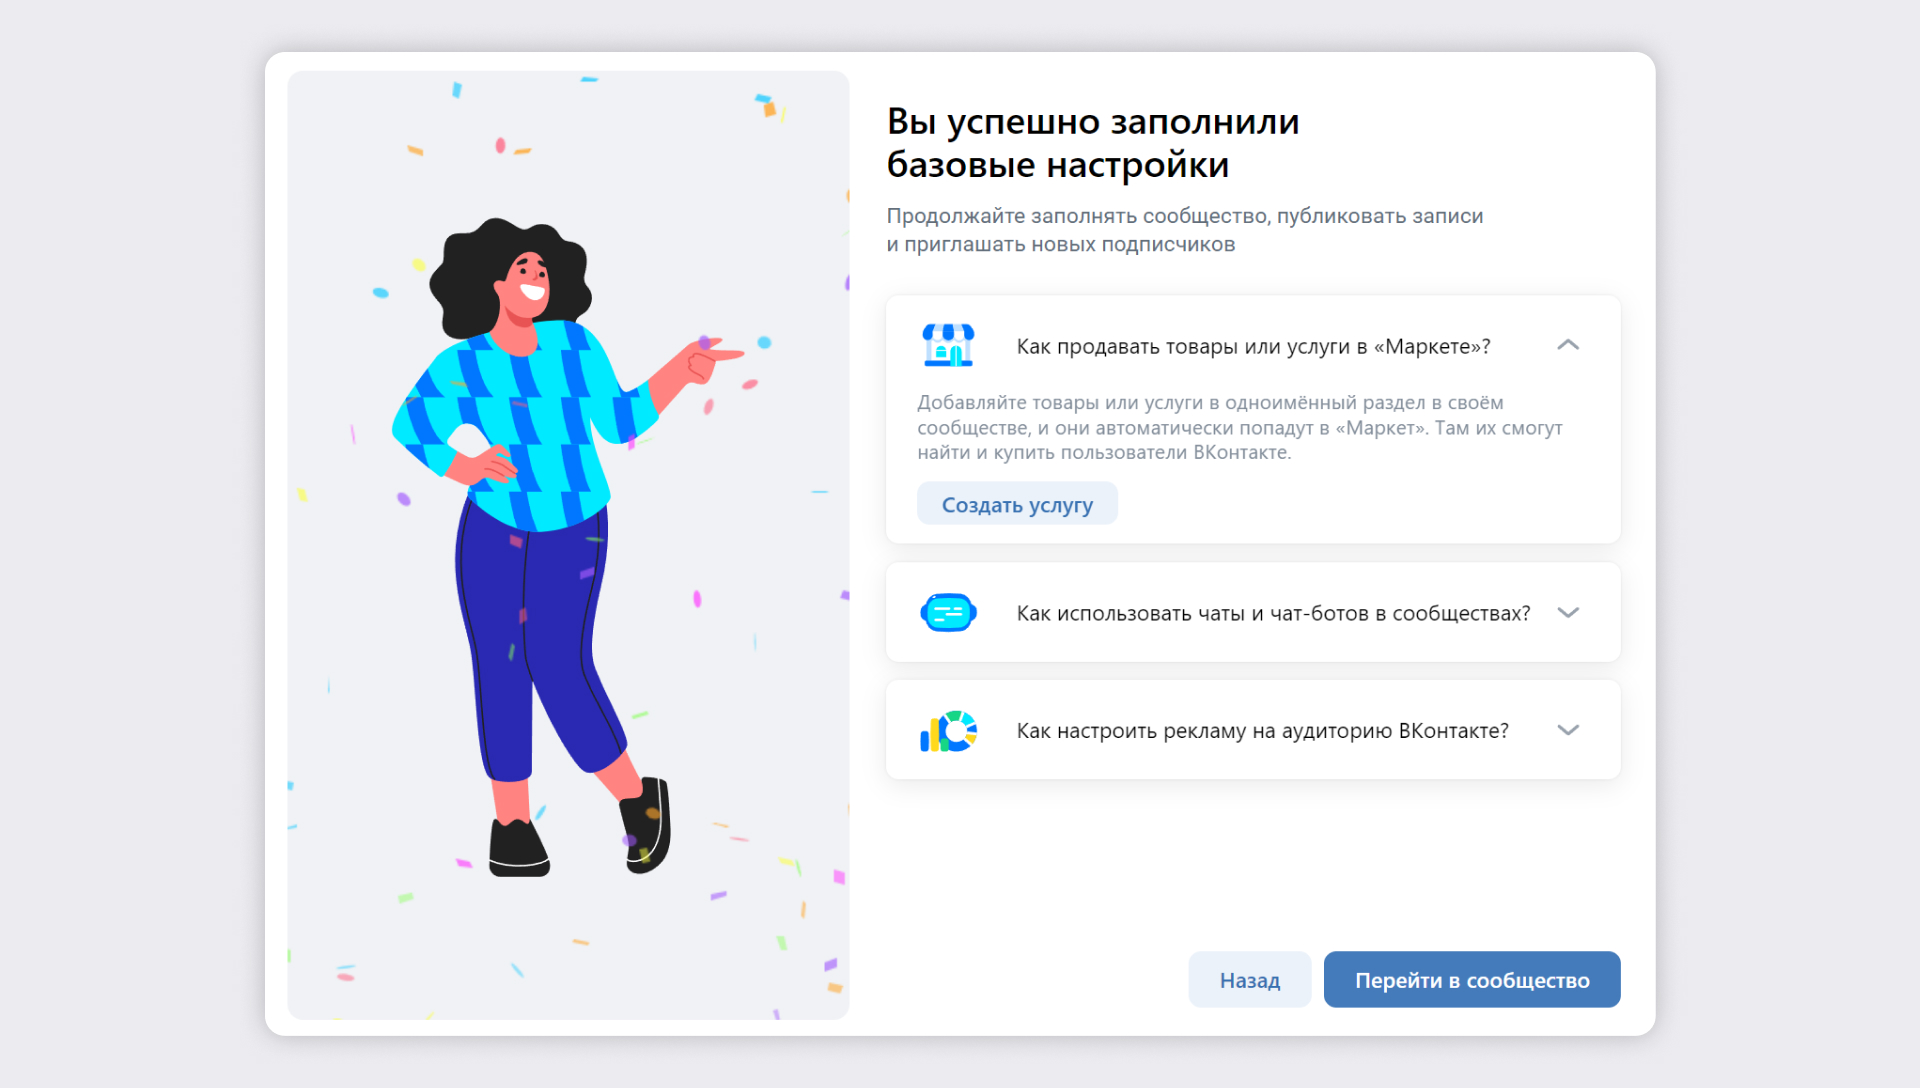 Произвести рассылку приглашений в мою группу ВКонтакте - активным участникам из группы конкурентов